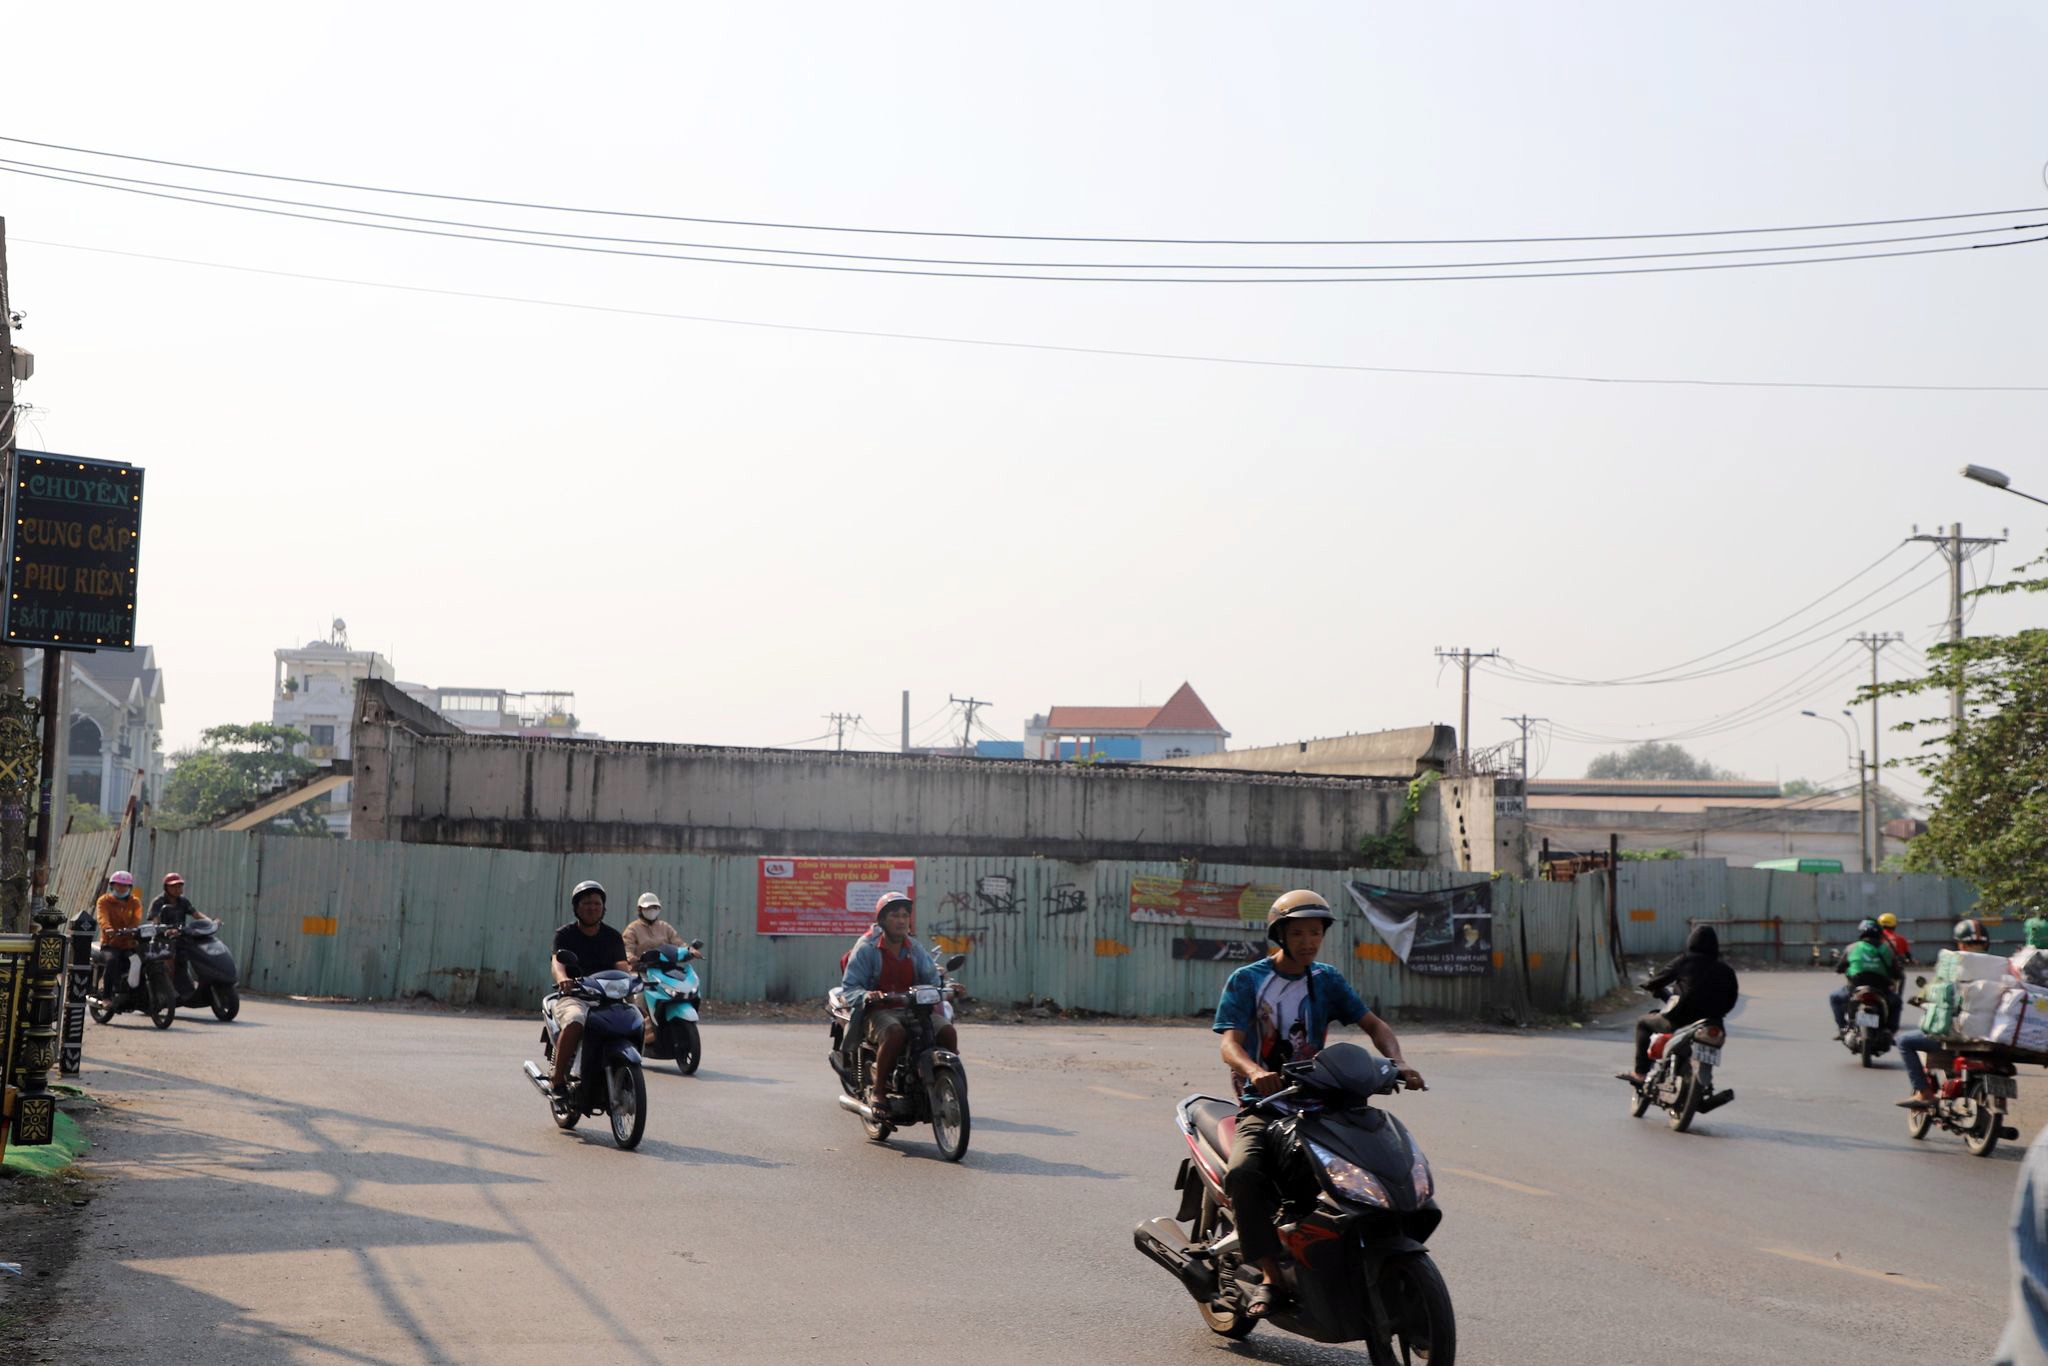 Ông Mạnh Linh nhà gần công trình cho biết, dự án bị ngưng trệ nhiều năm, người dân hằng ngày phải đi qua hai cầu sắt ọp ẹp kế bên, thường xuyên chịu cảnh kẹt xe, va quẹt. 